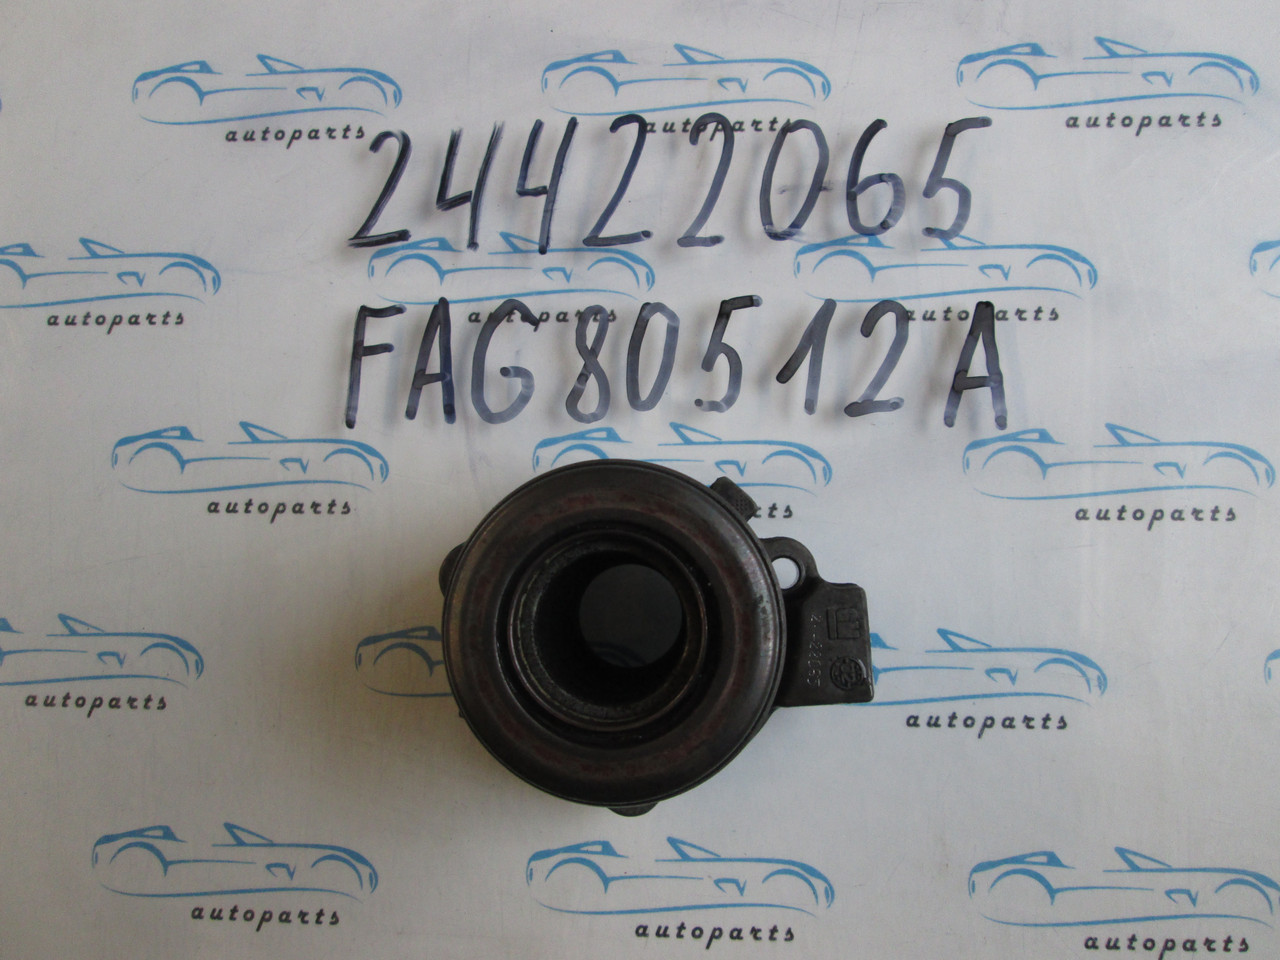 Вижимний підшипник Opel 24422065, FAG 80512A